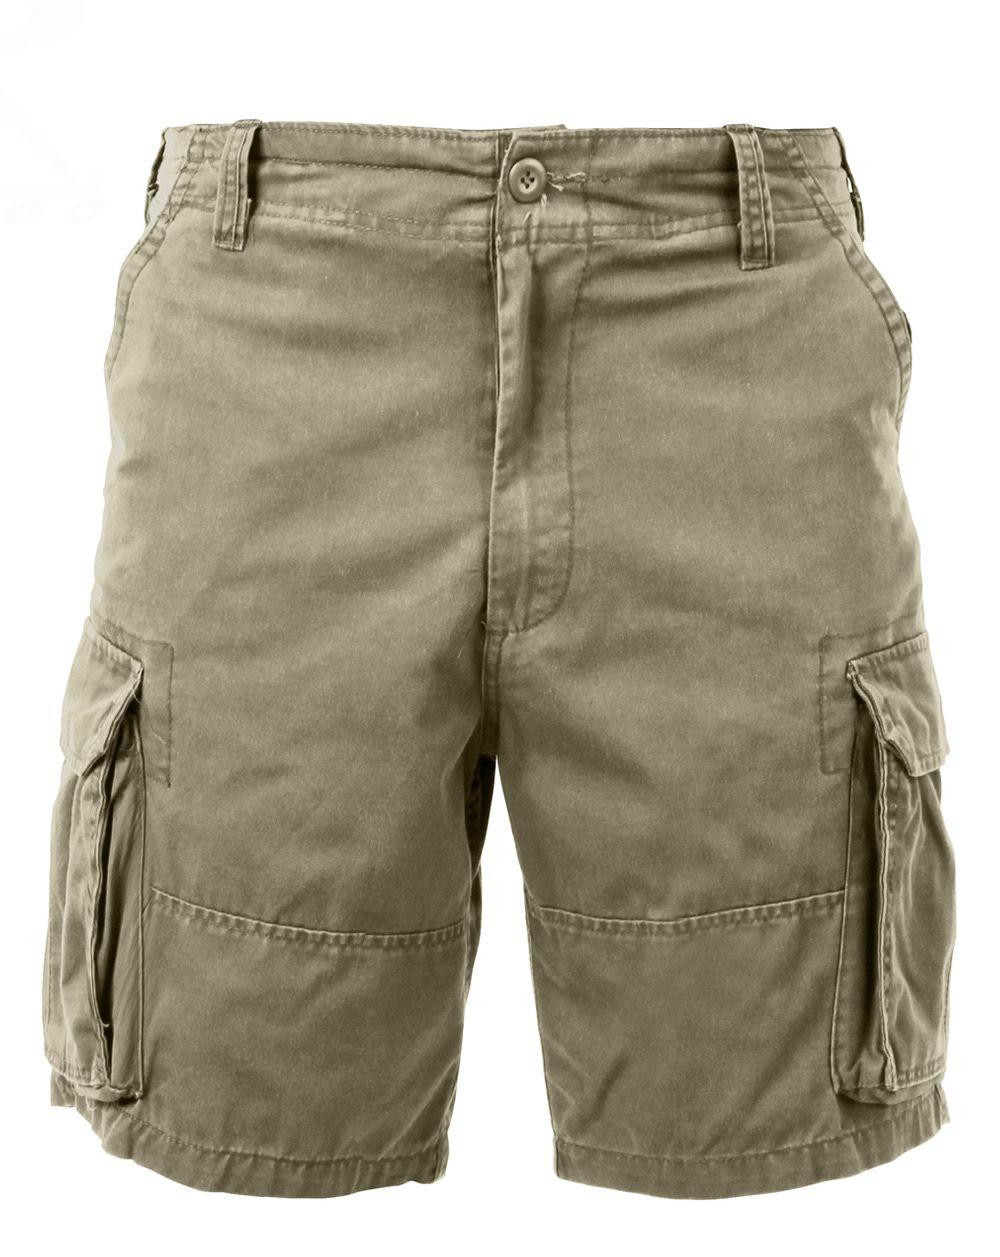 Rothco Cargo shorts (Khaki, XL)